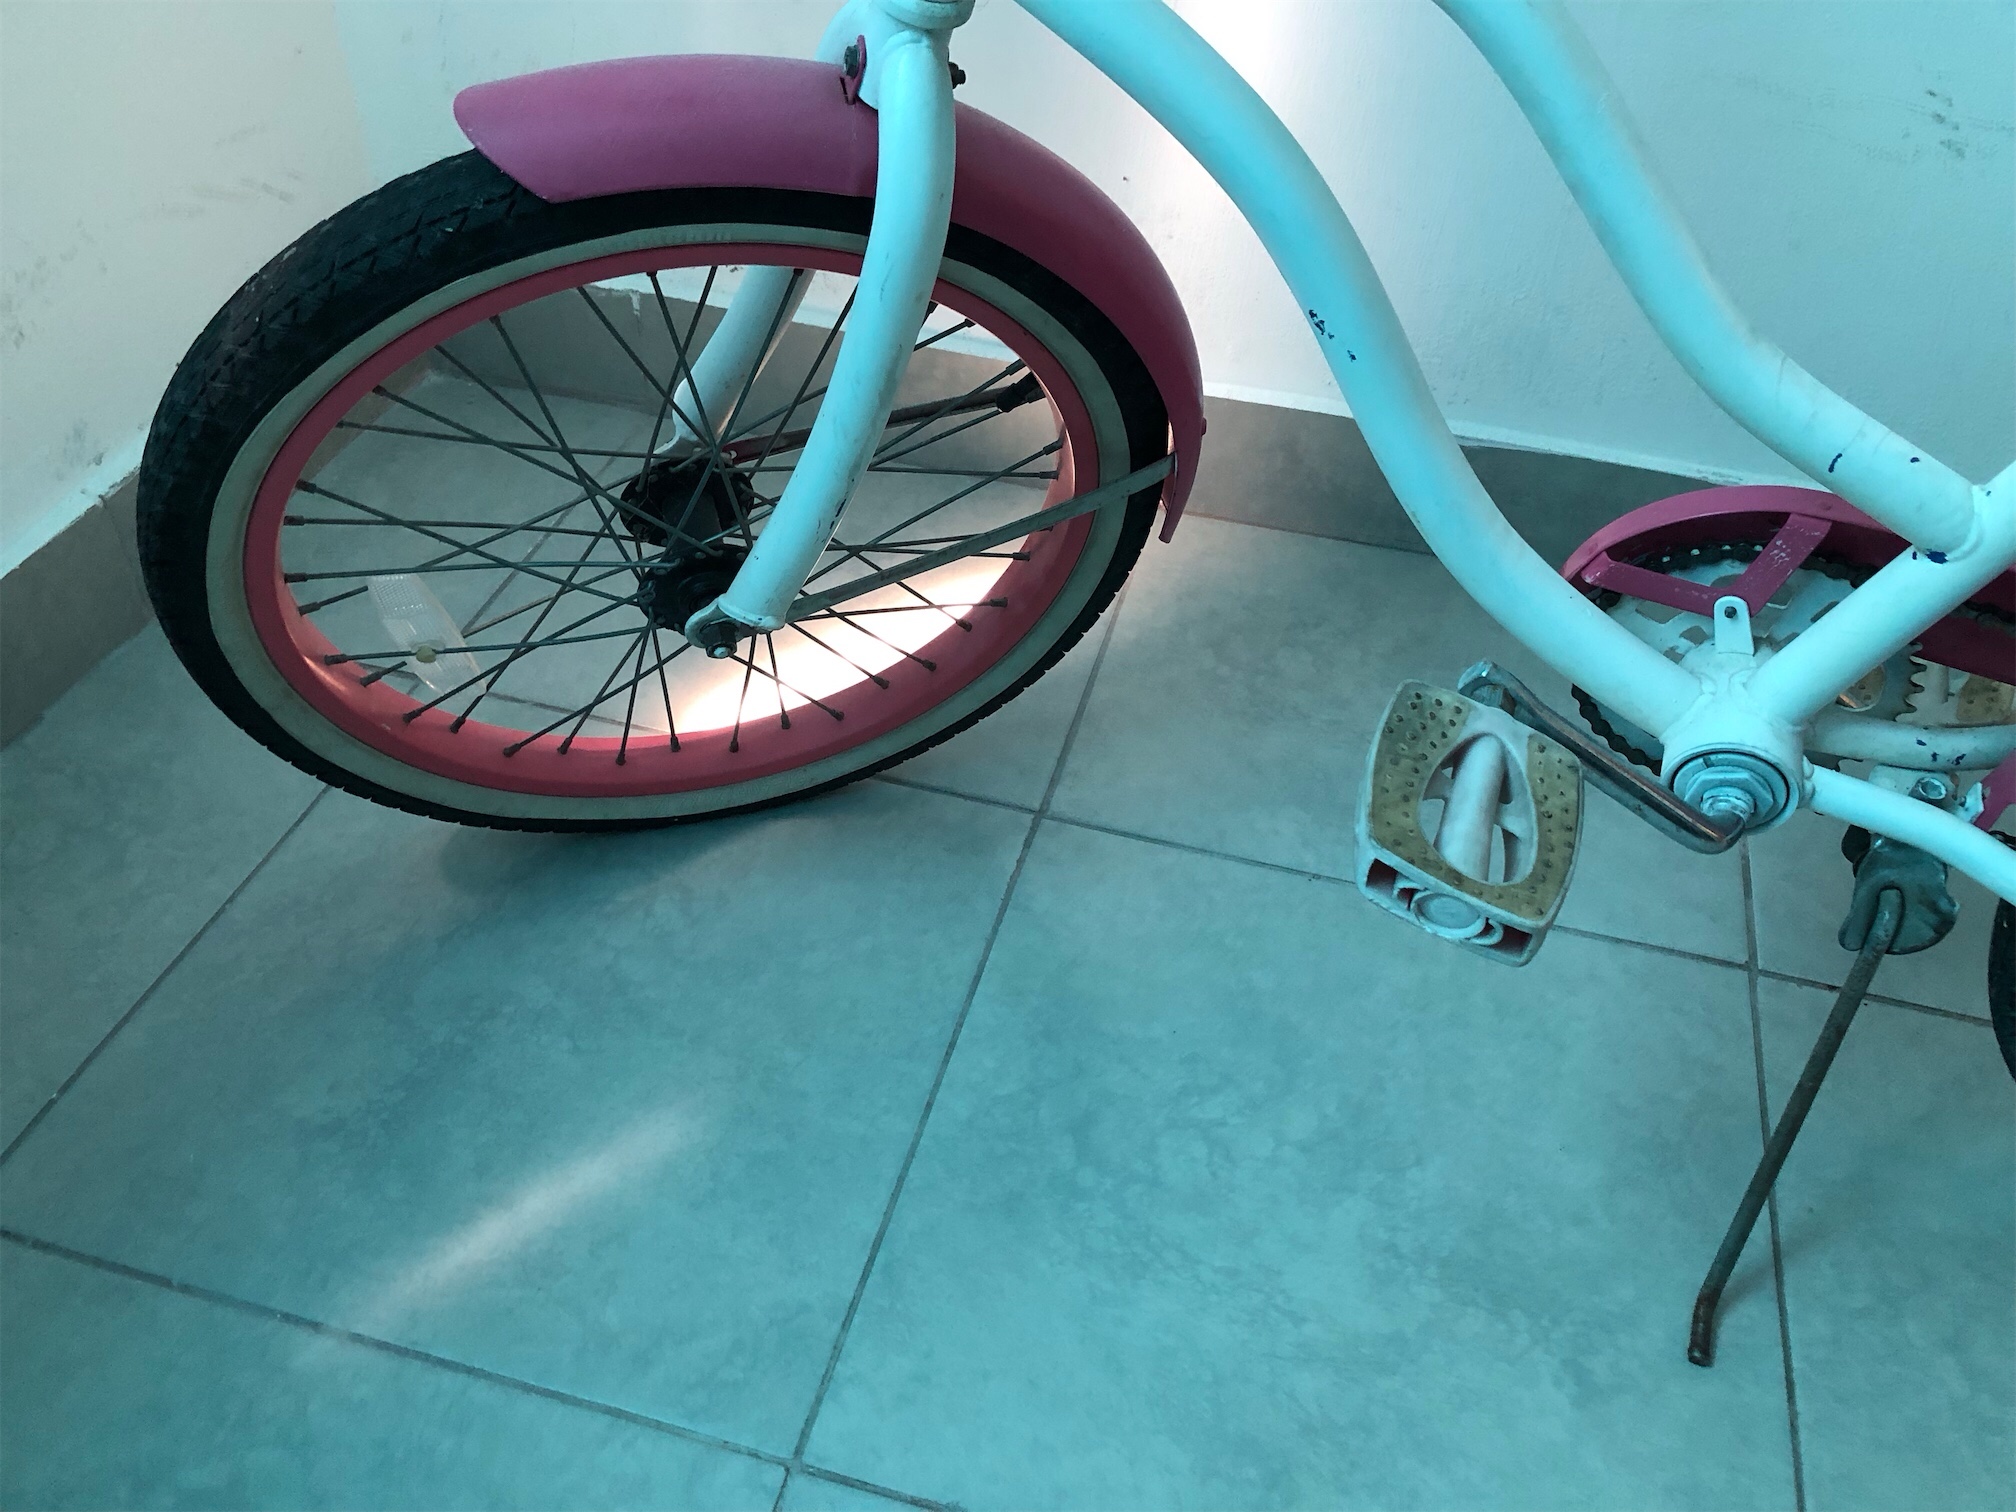 bicicletas y accesorios - venBicicleta una aro 22” rd$3,000 Rosada
Higuey